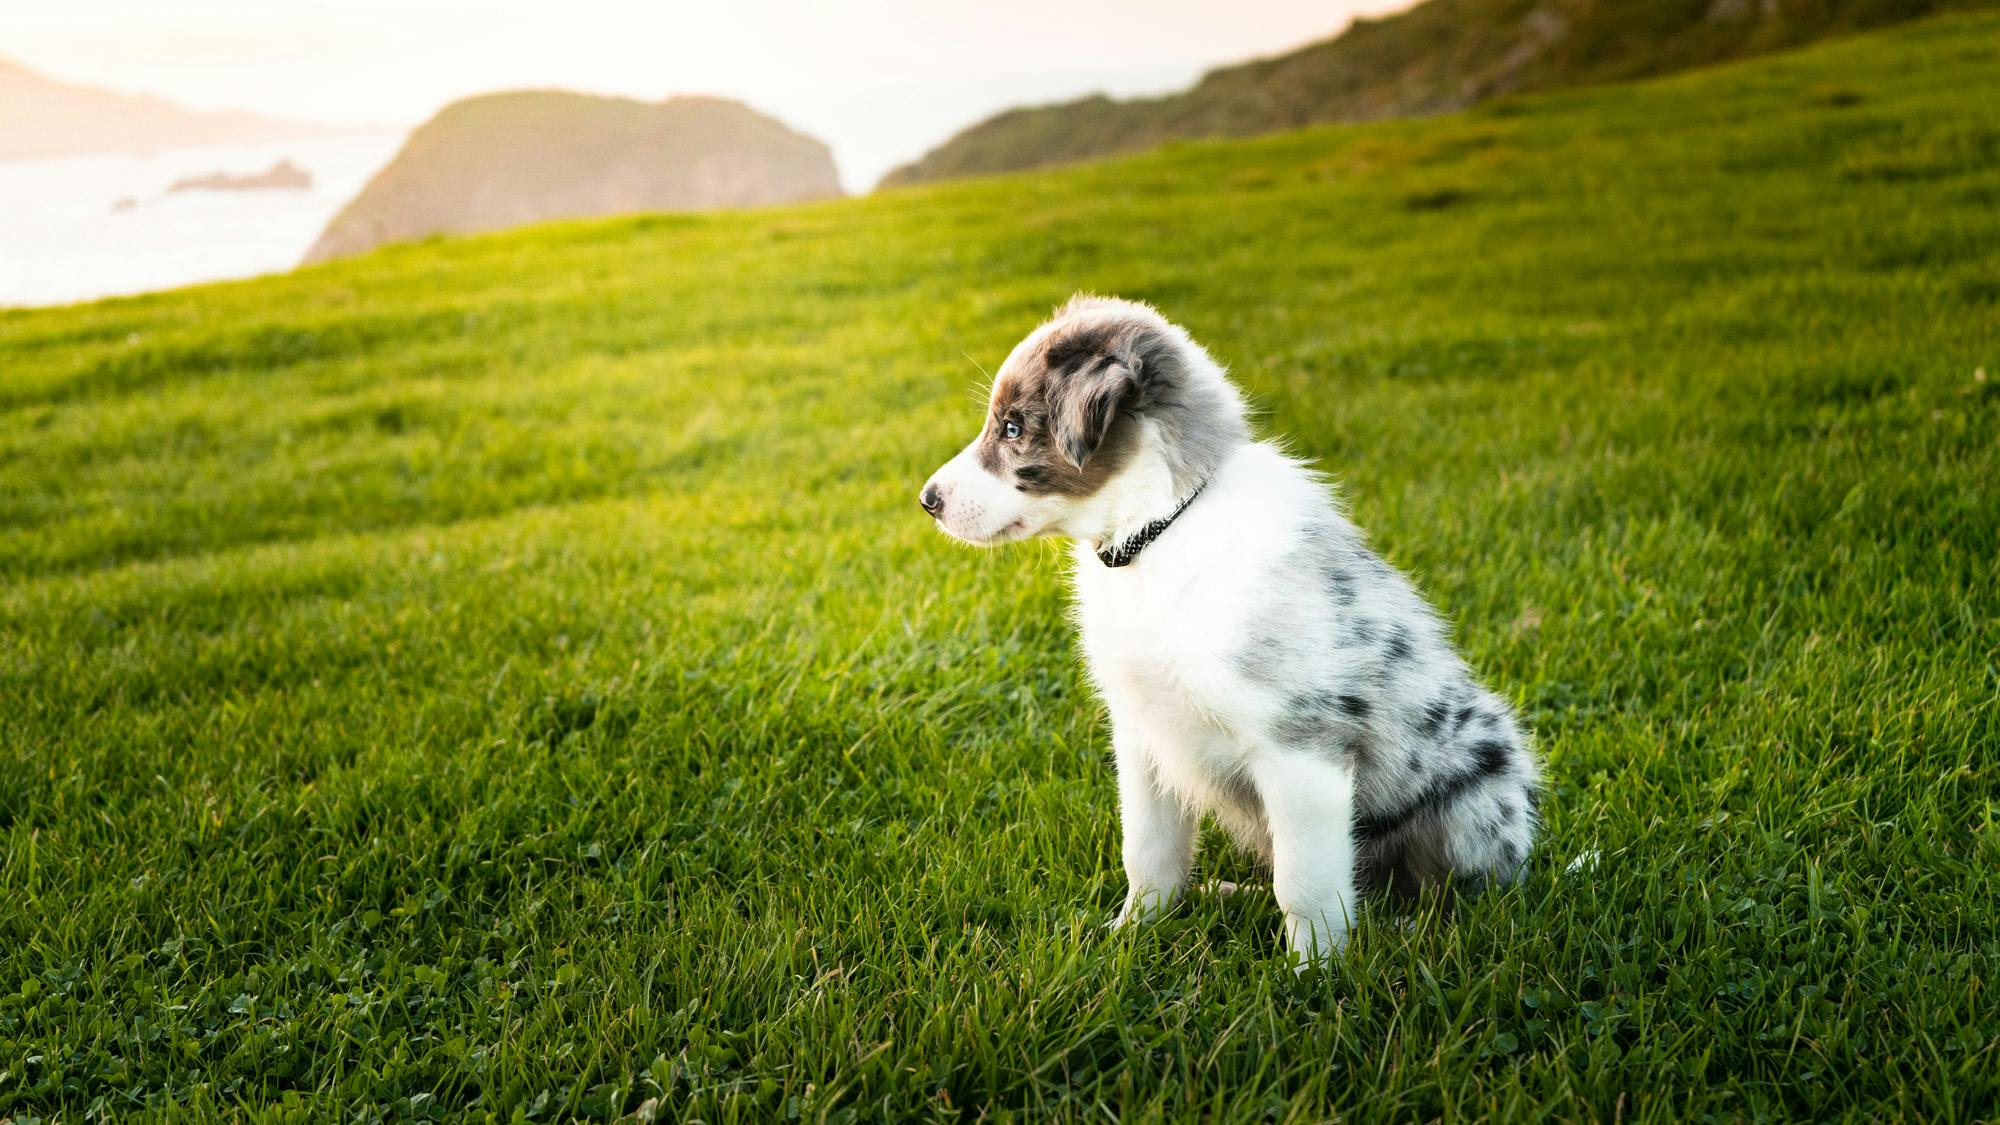 Aussie puppy in open grassy field sitting 